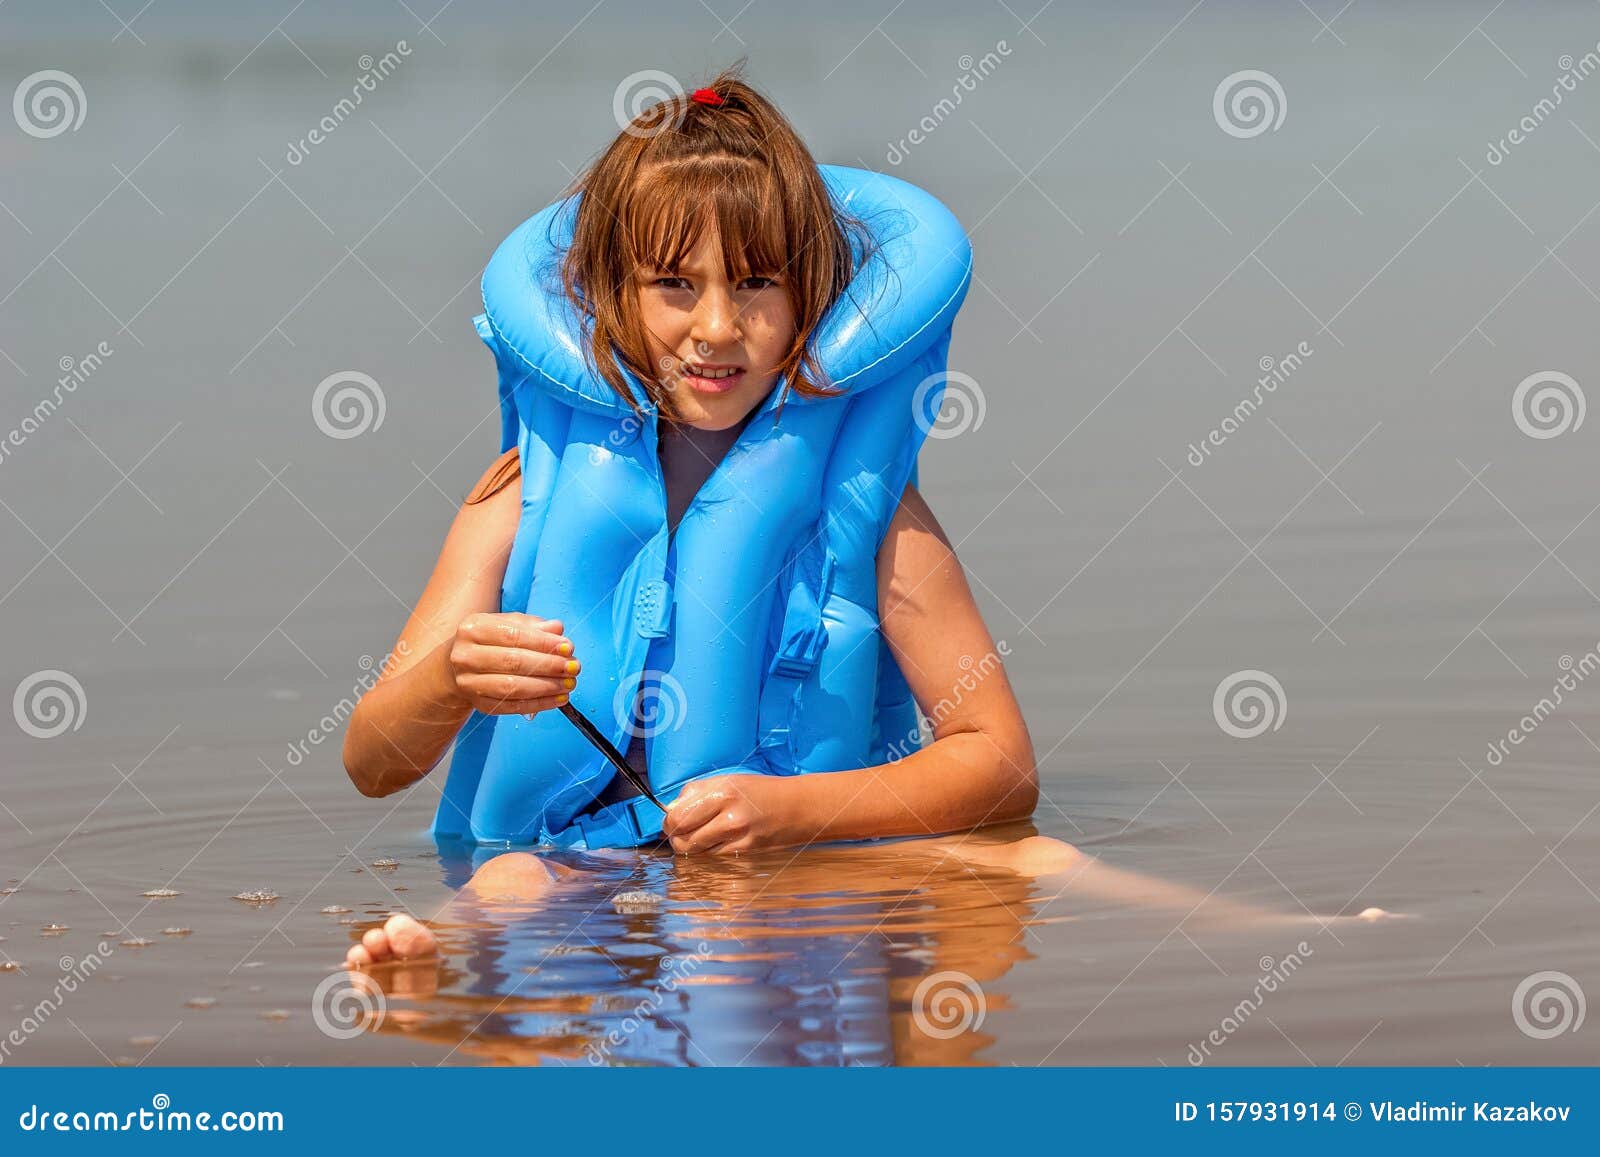 Kindermeisje in Een Blauw Opblaasbaar Zwemvest Wordt in Het Water ...